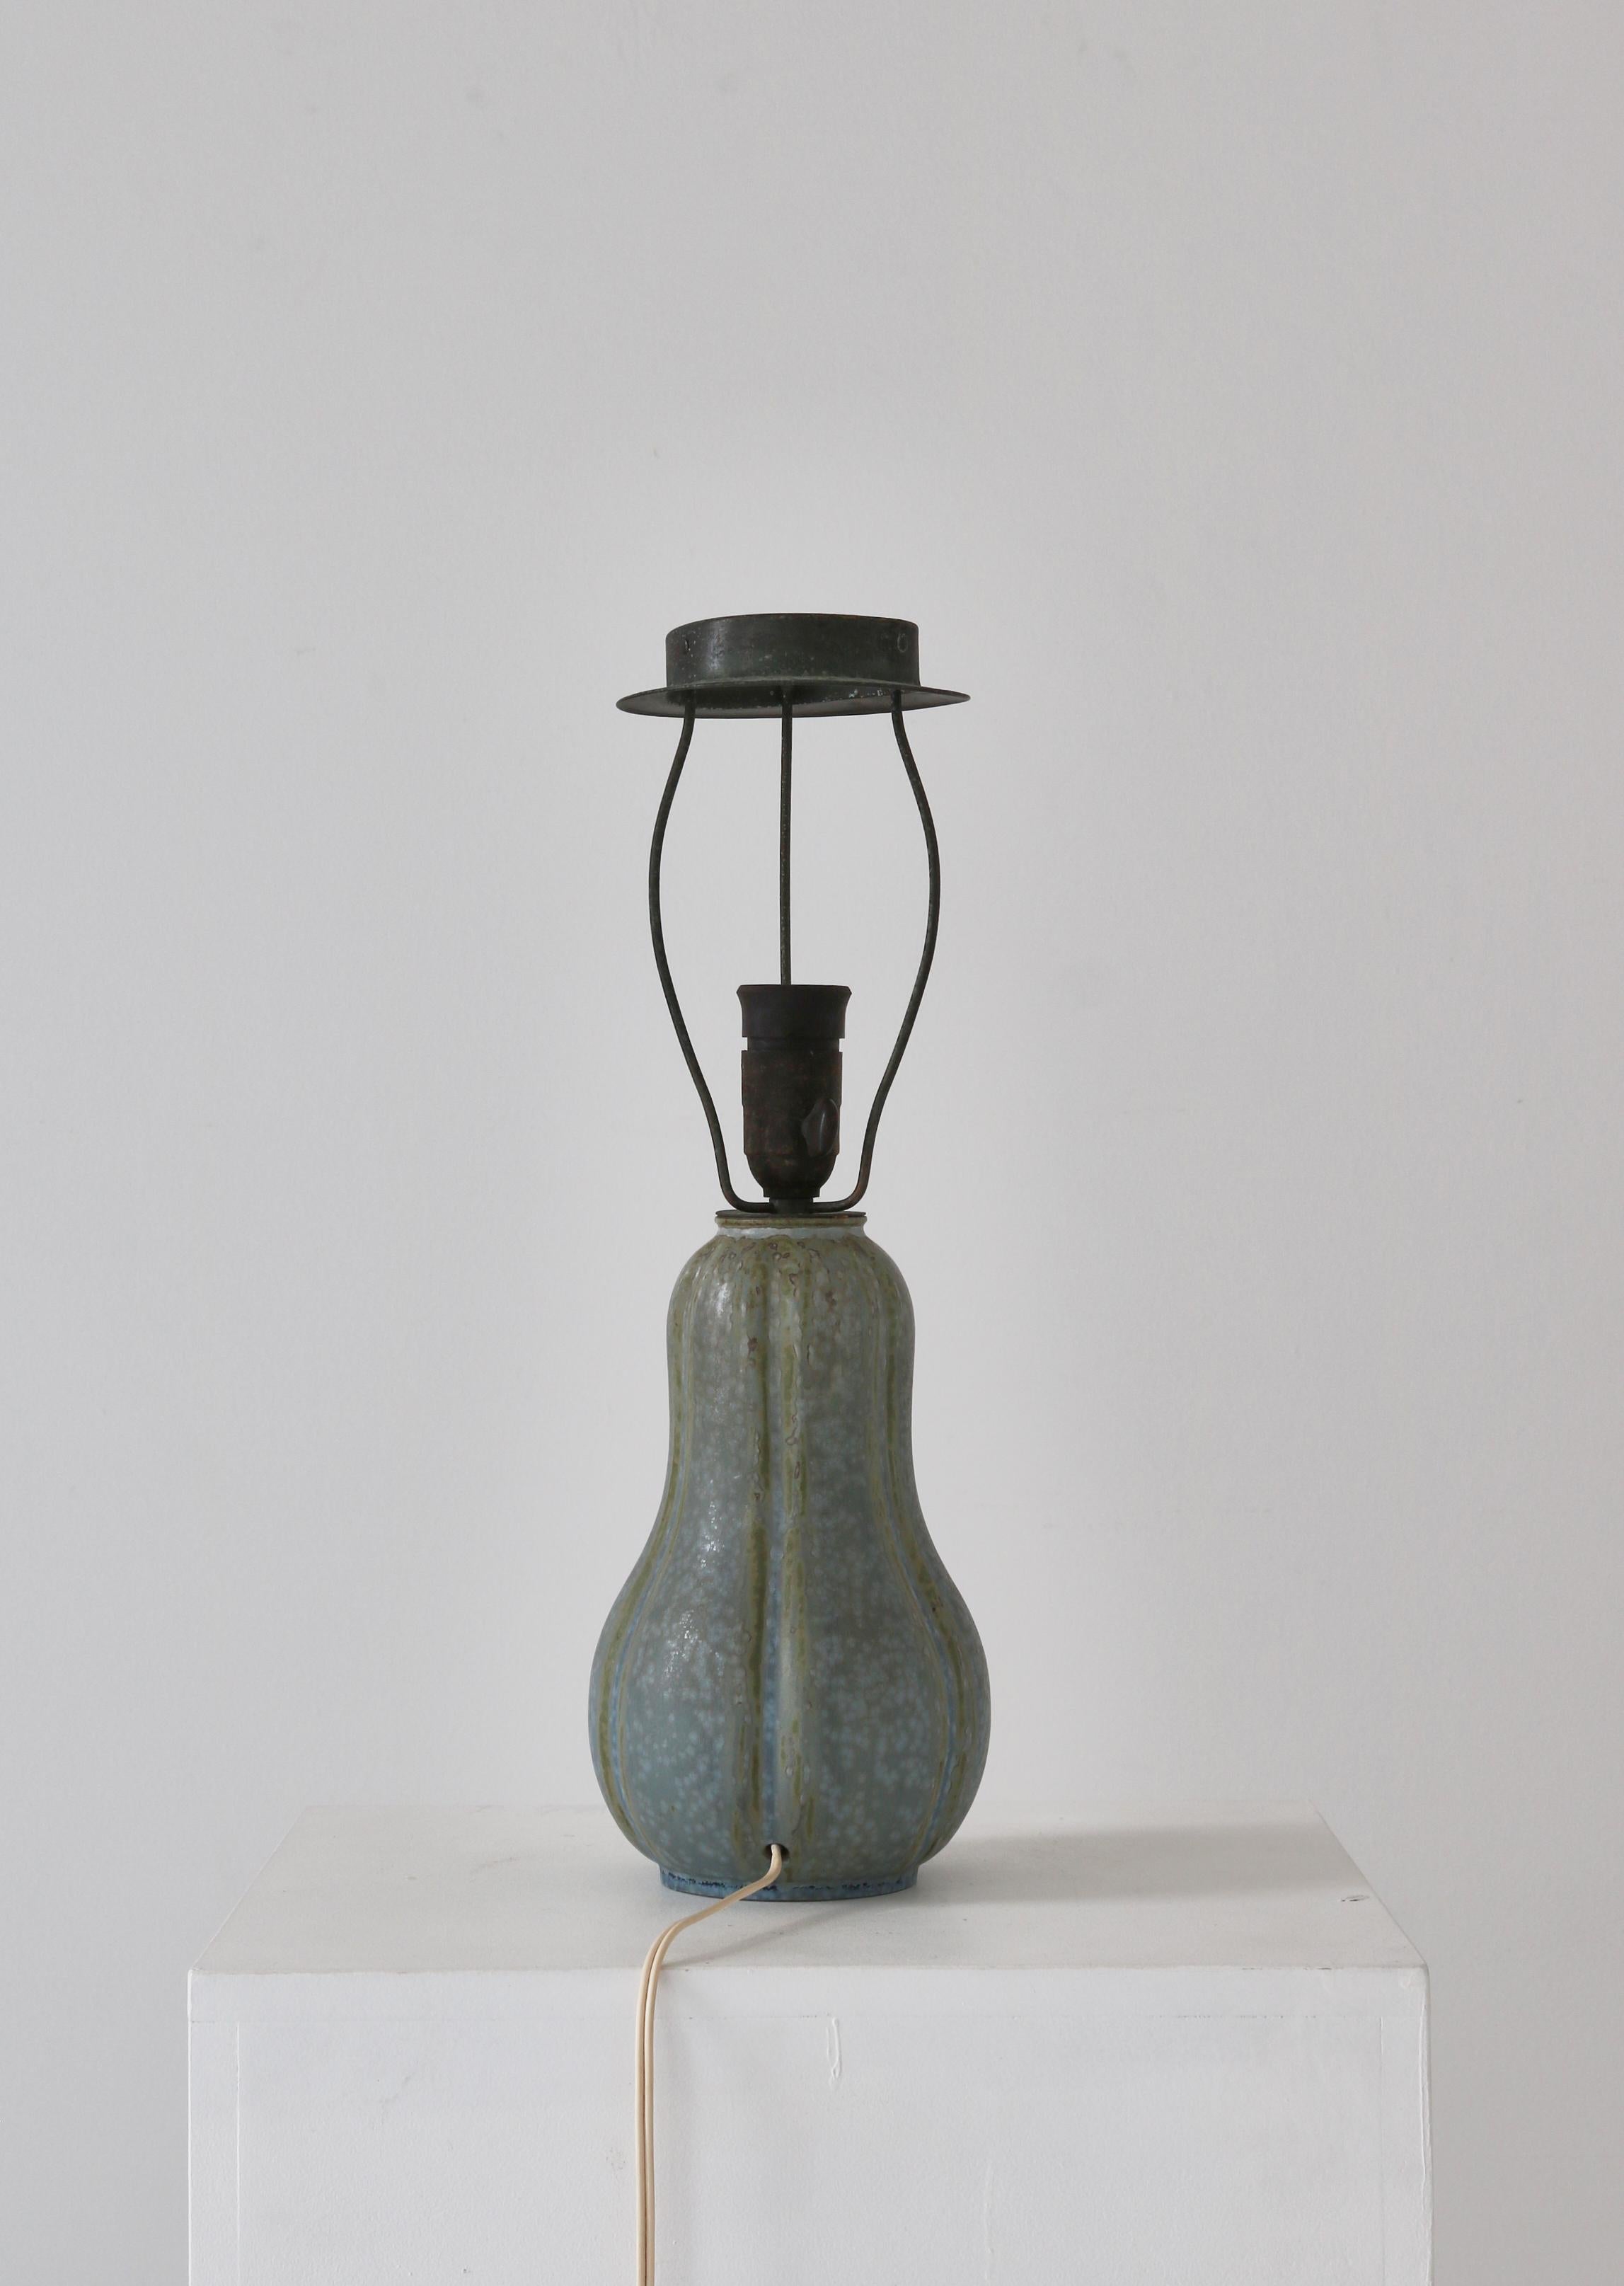 Arne Bang Table Lamp in Stoneware Handmade Own Studio, Denmark, 1930s For Sale 3